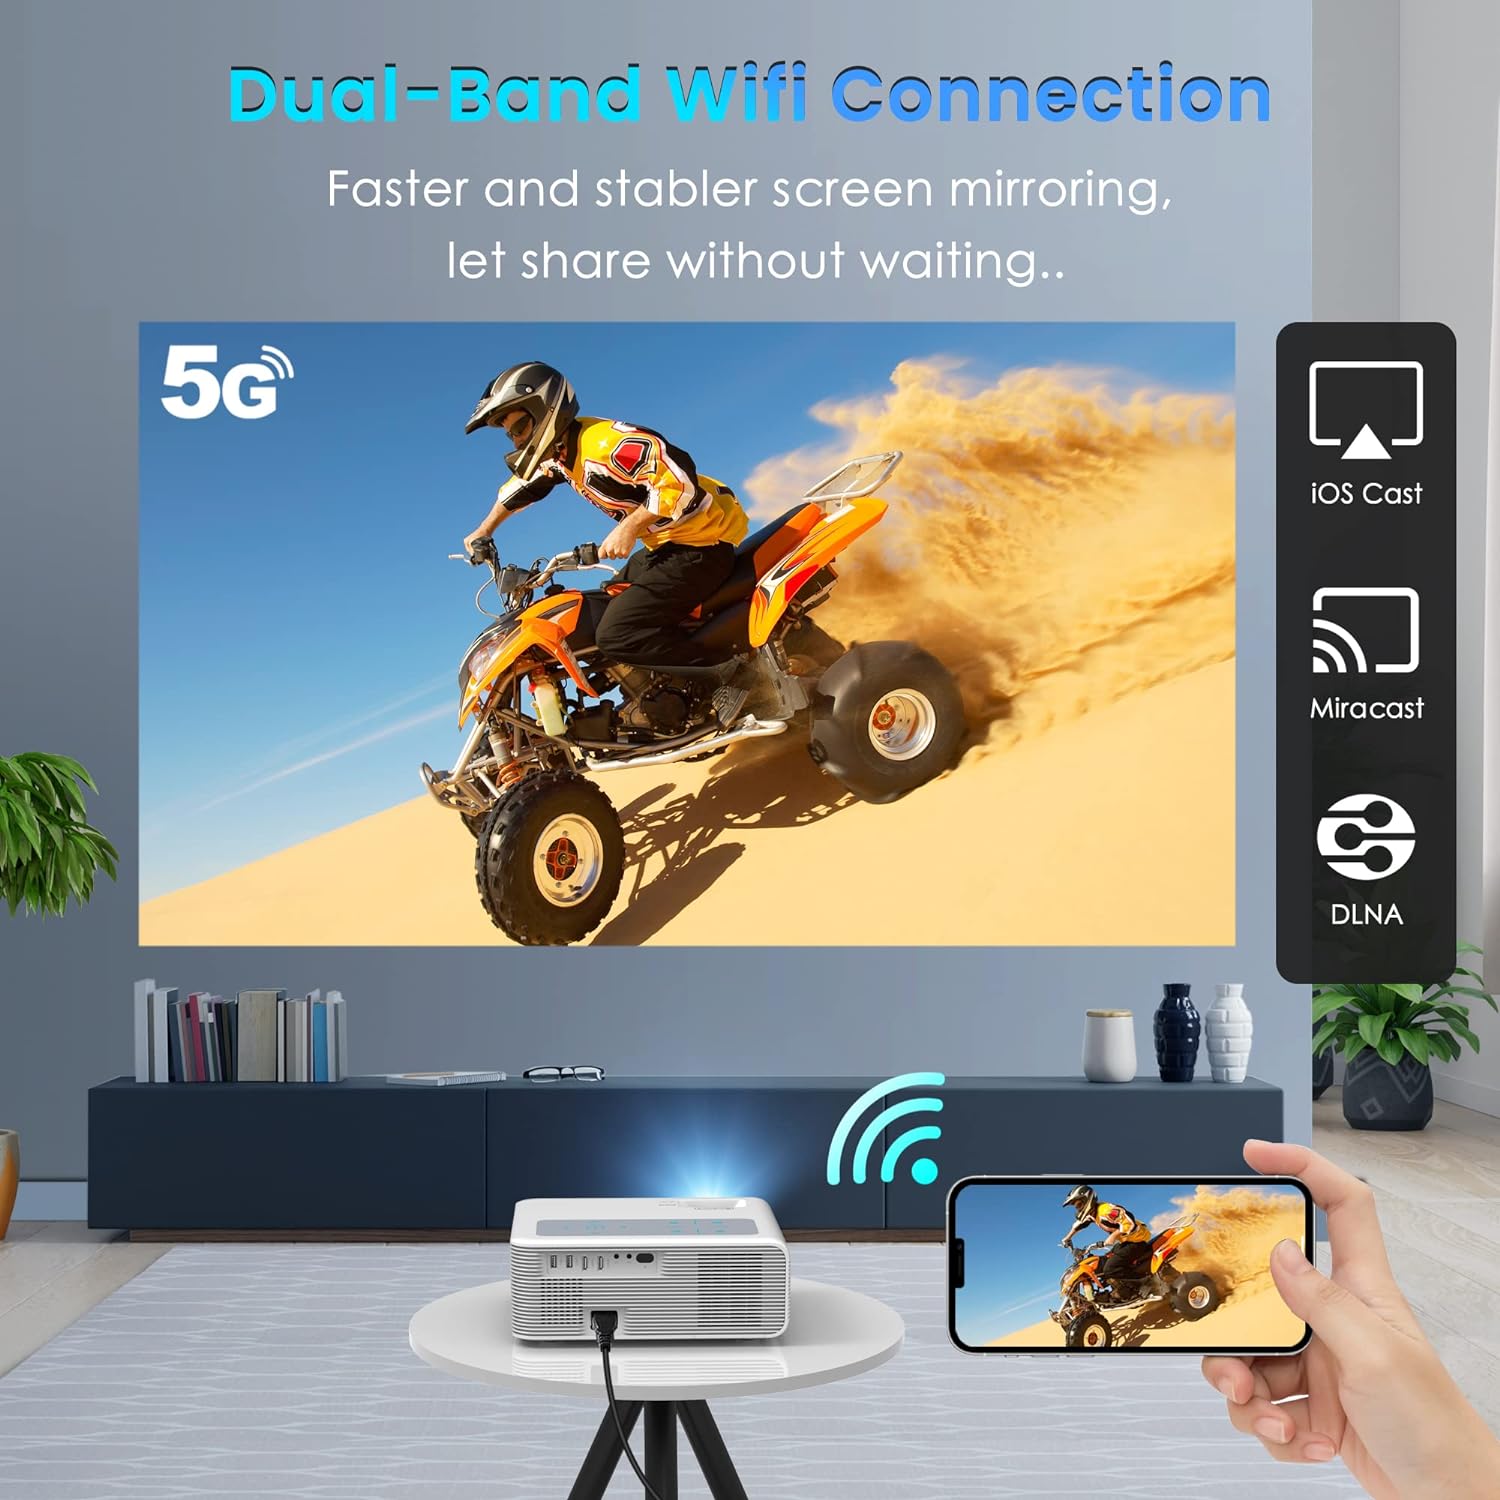 Proyector 5G WiFi 1080P compatible con 4K 800 ANSI HD película para exteriores